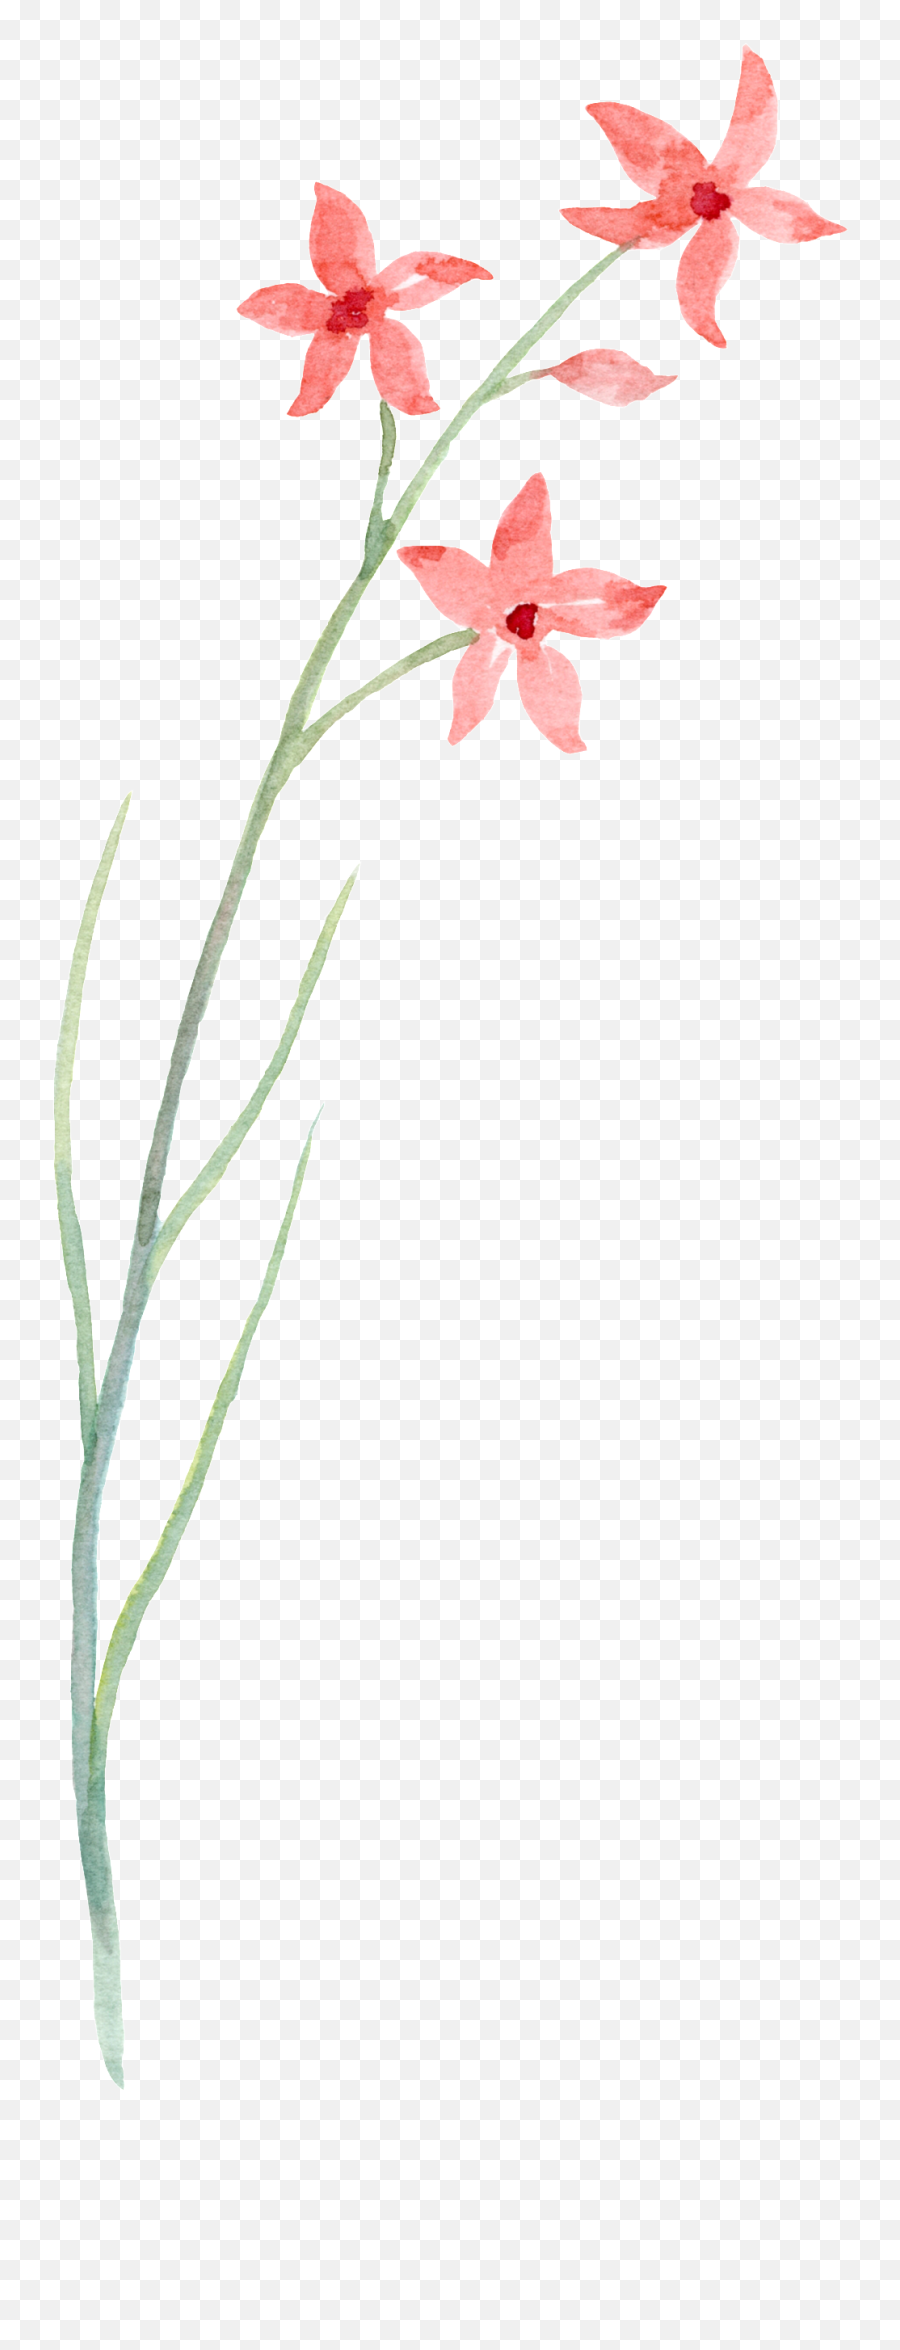 Download Simple Line Floral Transparent Decorative - Flower Emoji,Floral Transparent